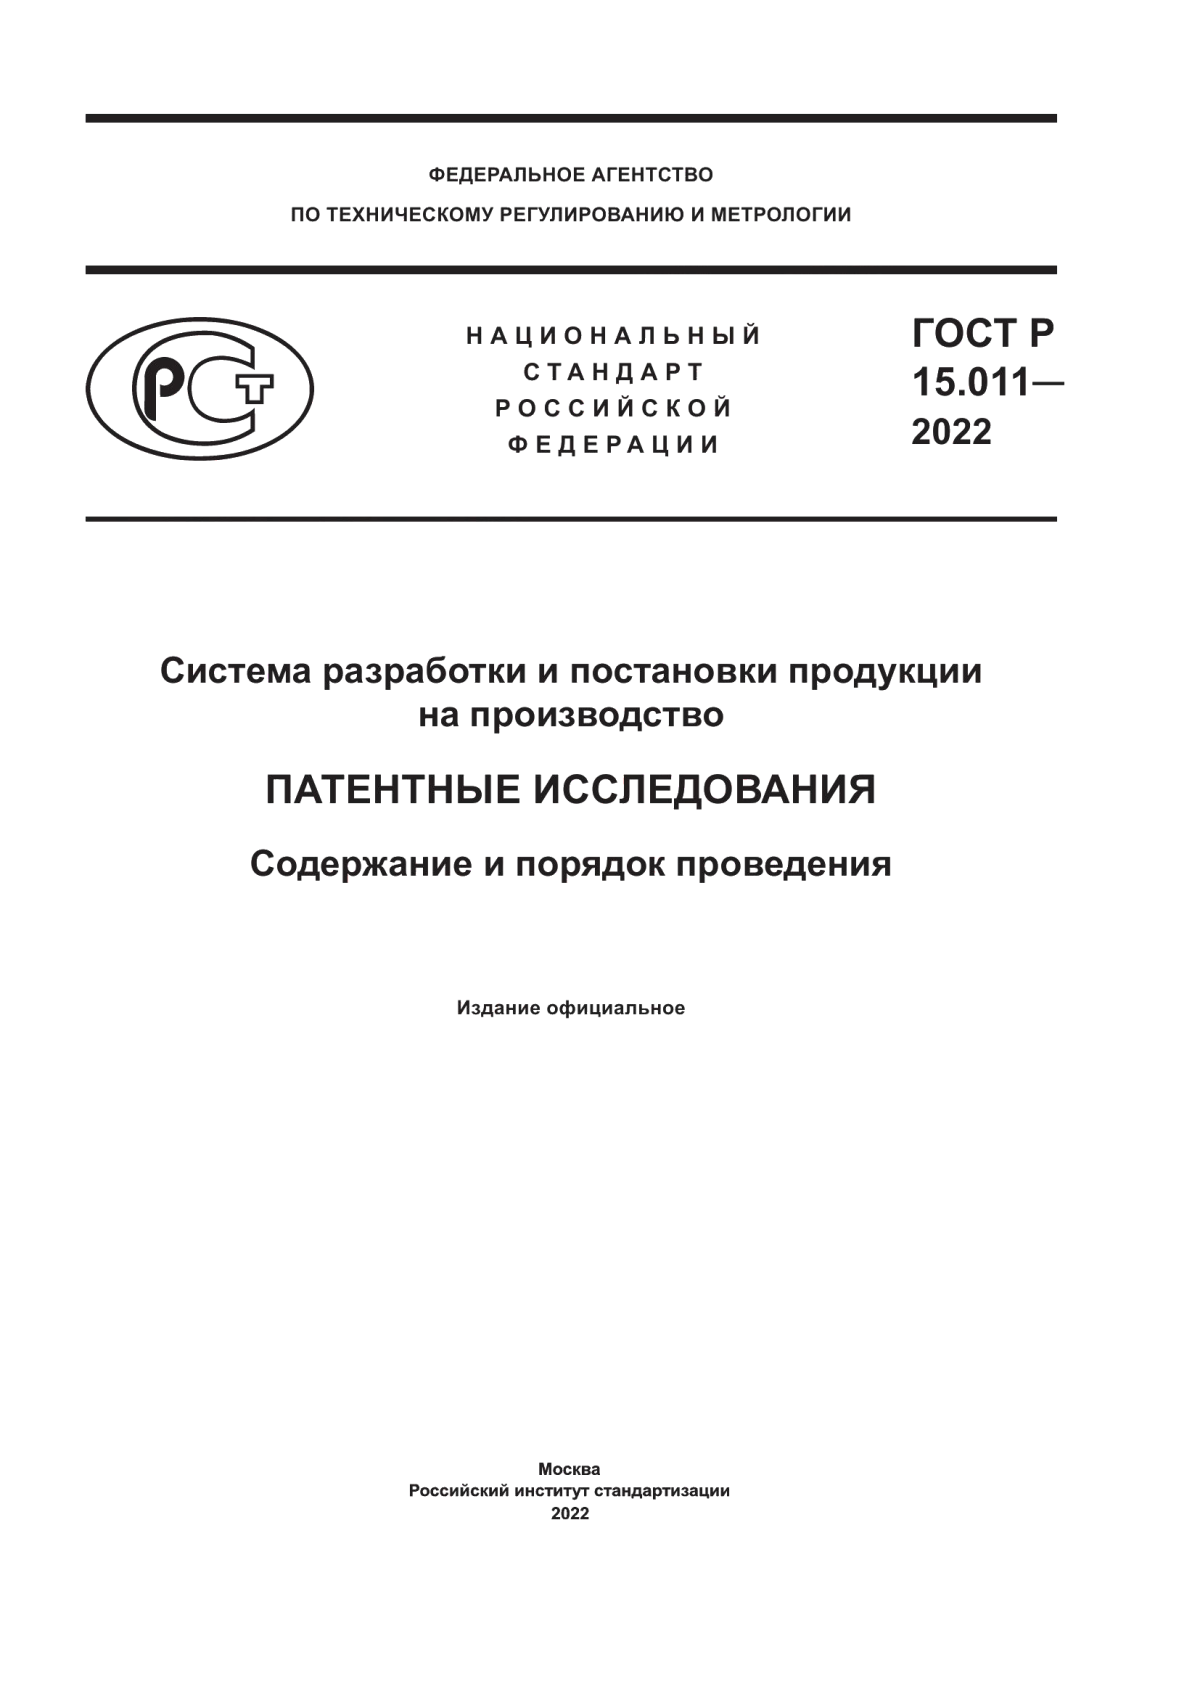 ГОСТ Р 15.011-2022 Система разработки и постановки продукции на производство. Патентные исследования. Содержание и порядок проведения